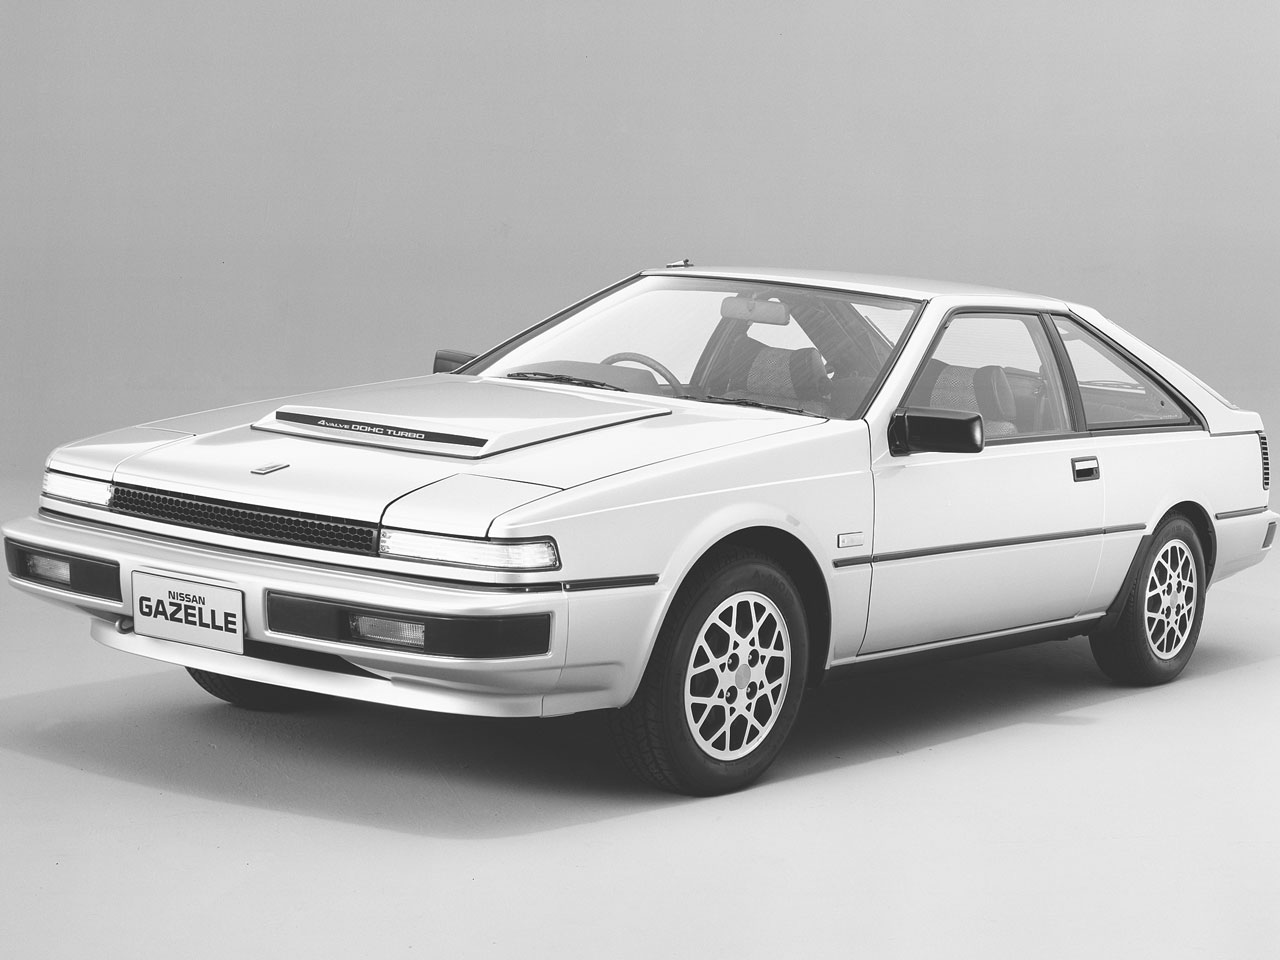 日産 ガゼール 1983年モデル 新車画像